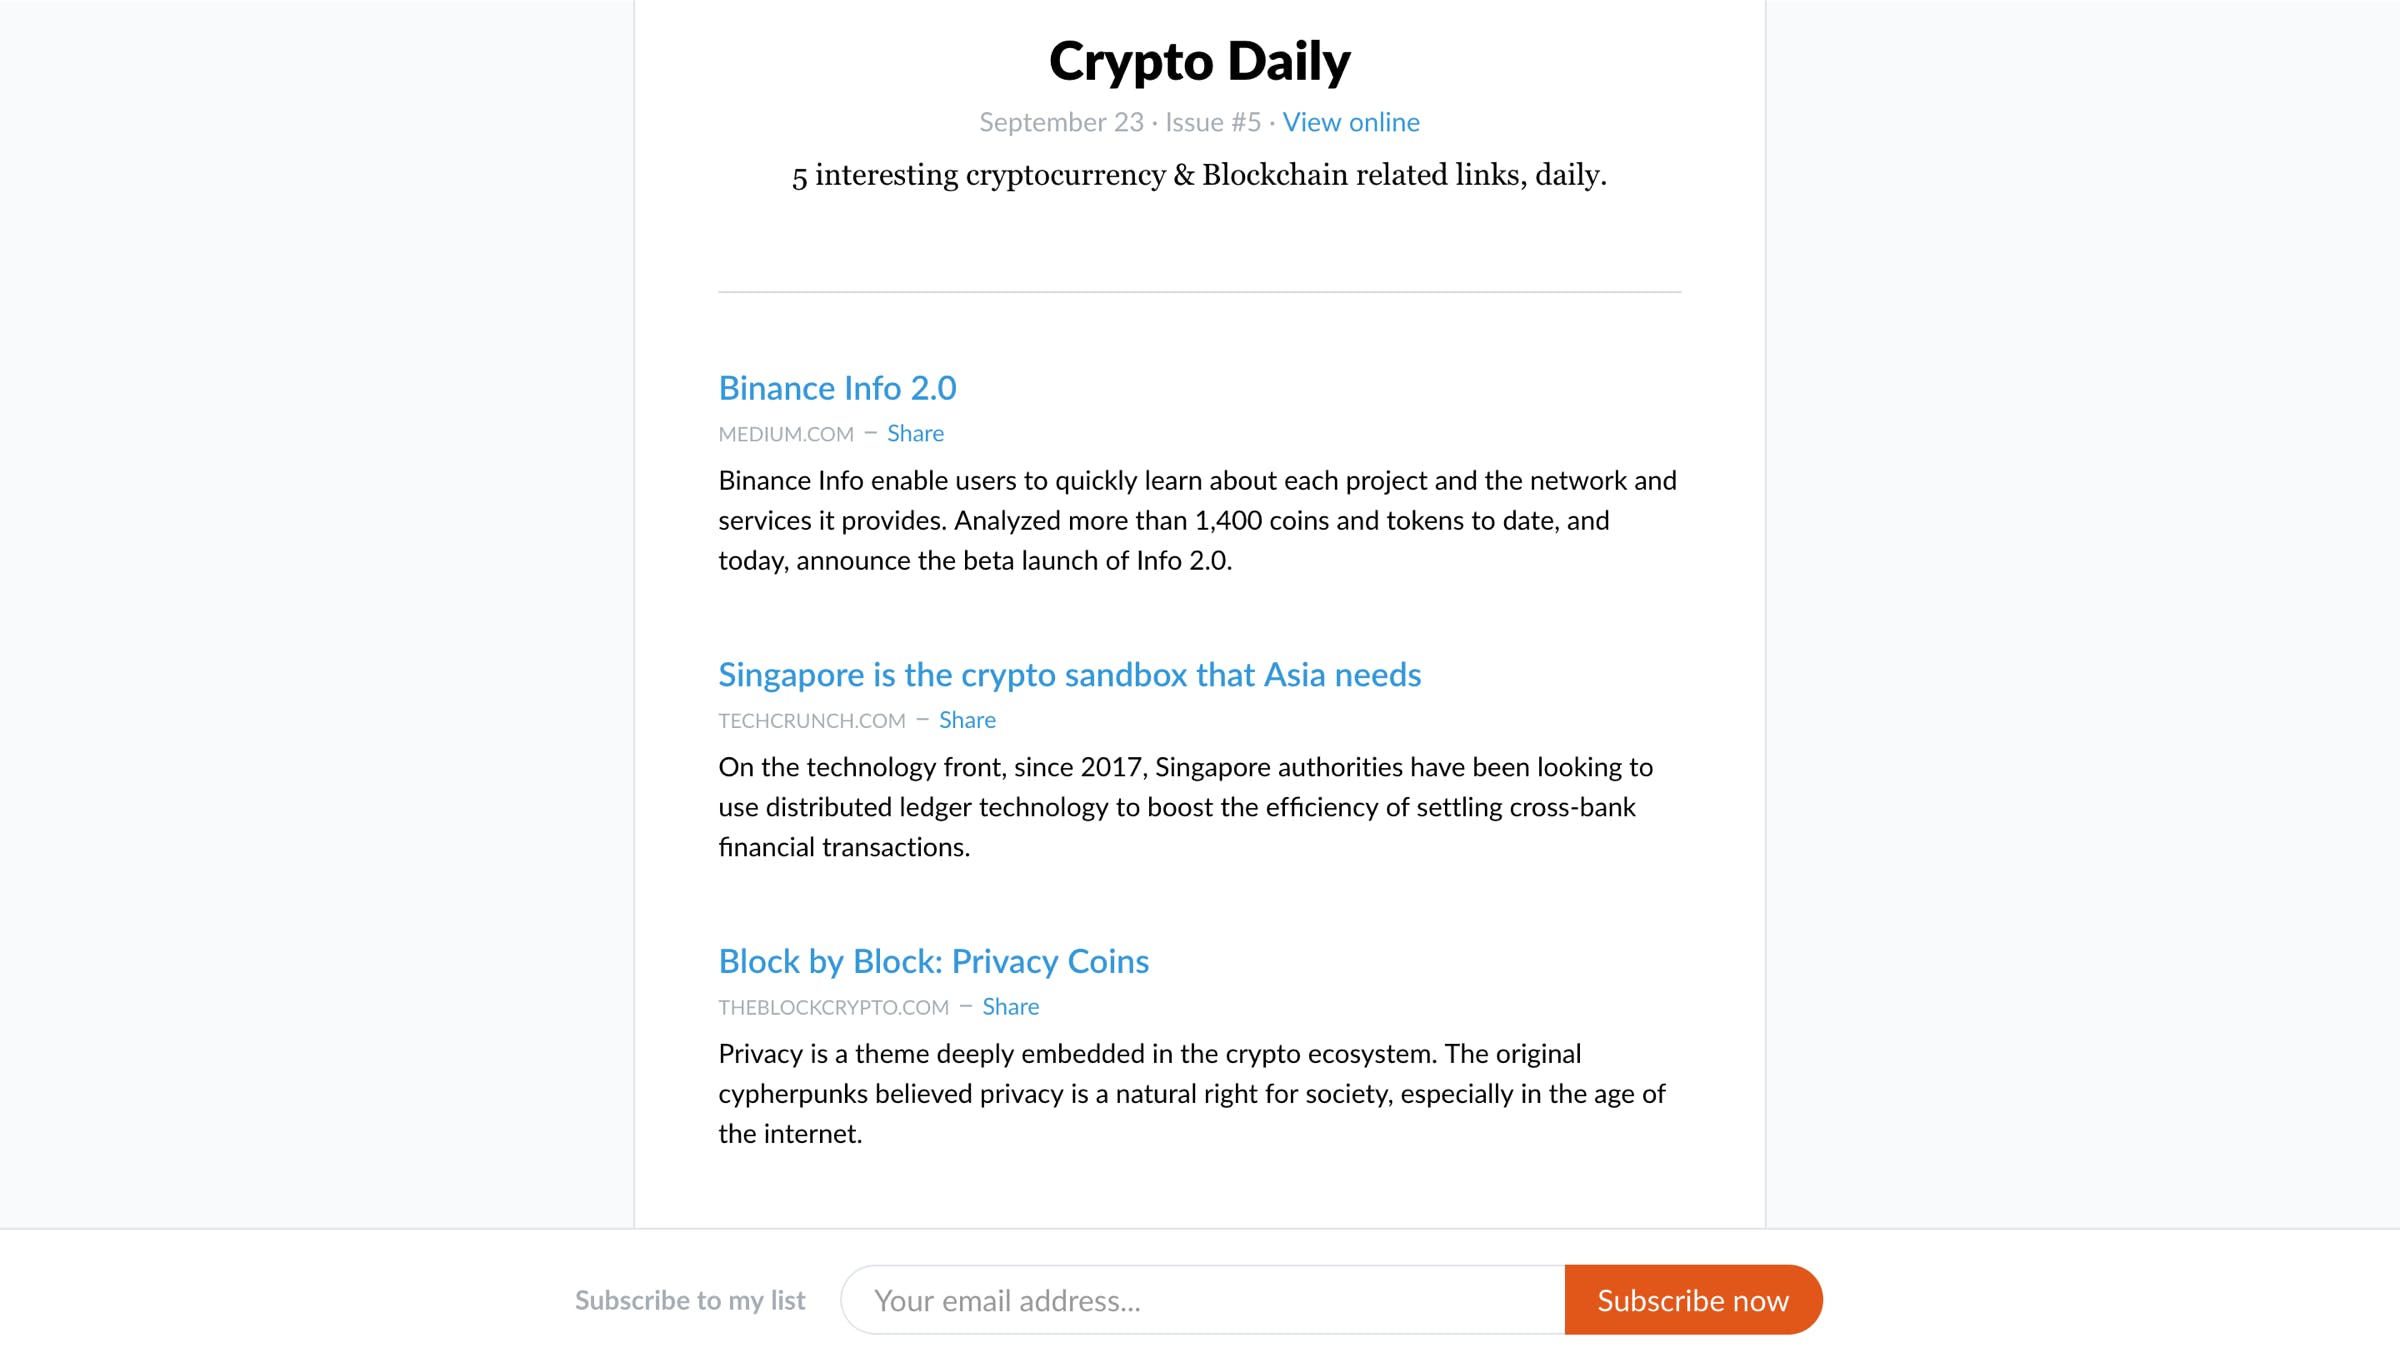 Crypto Daily media 1